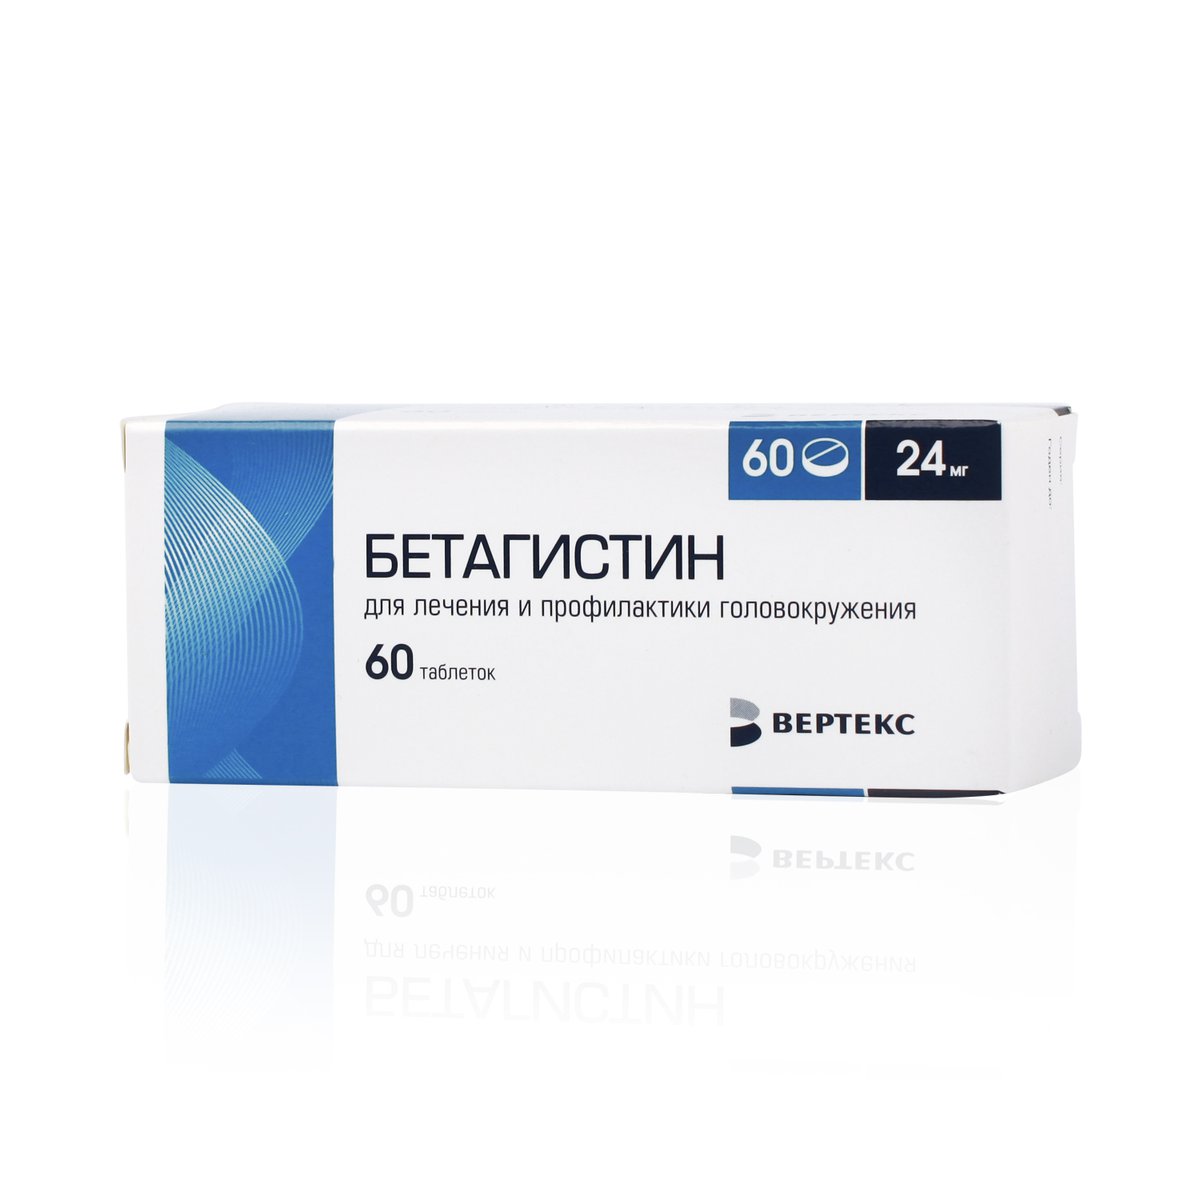 Бетагистин Вертекс (таблетки, 60 шт, 24 мг) - цена,  онлайн в .